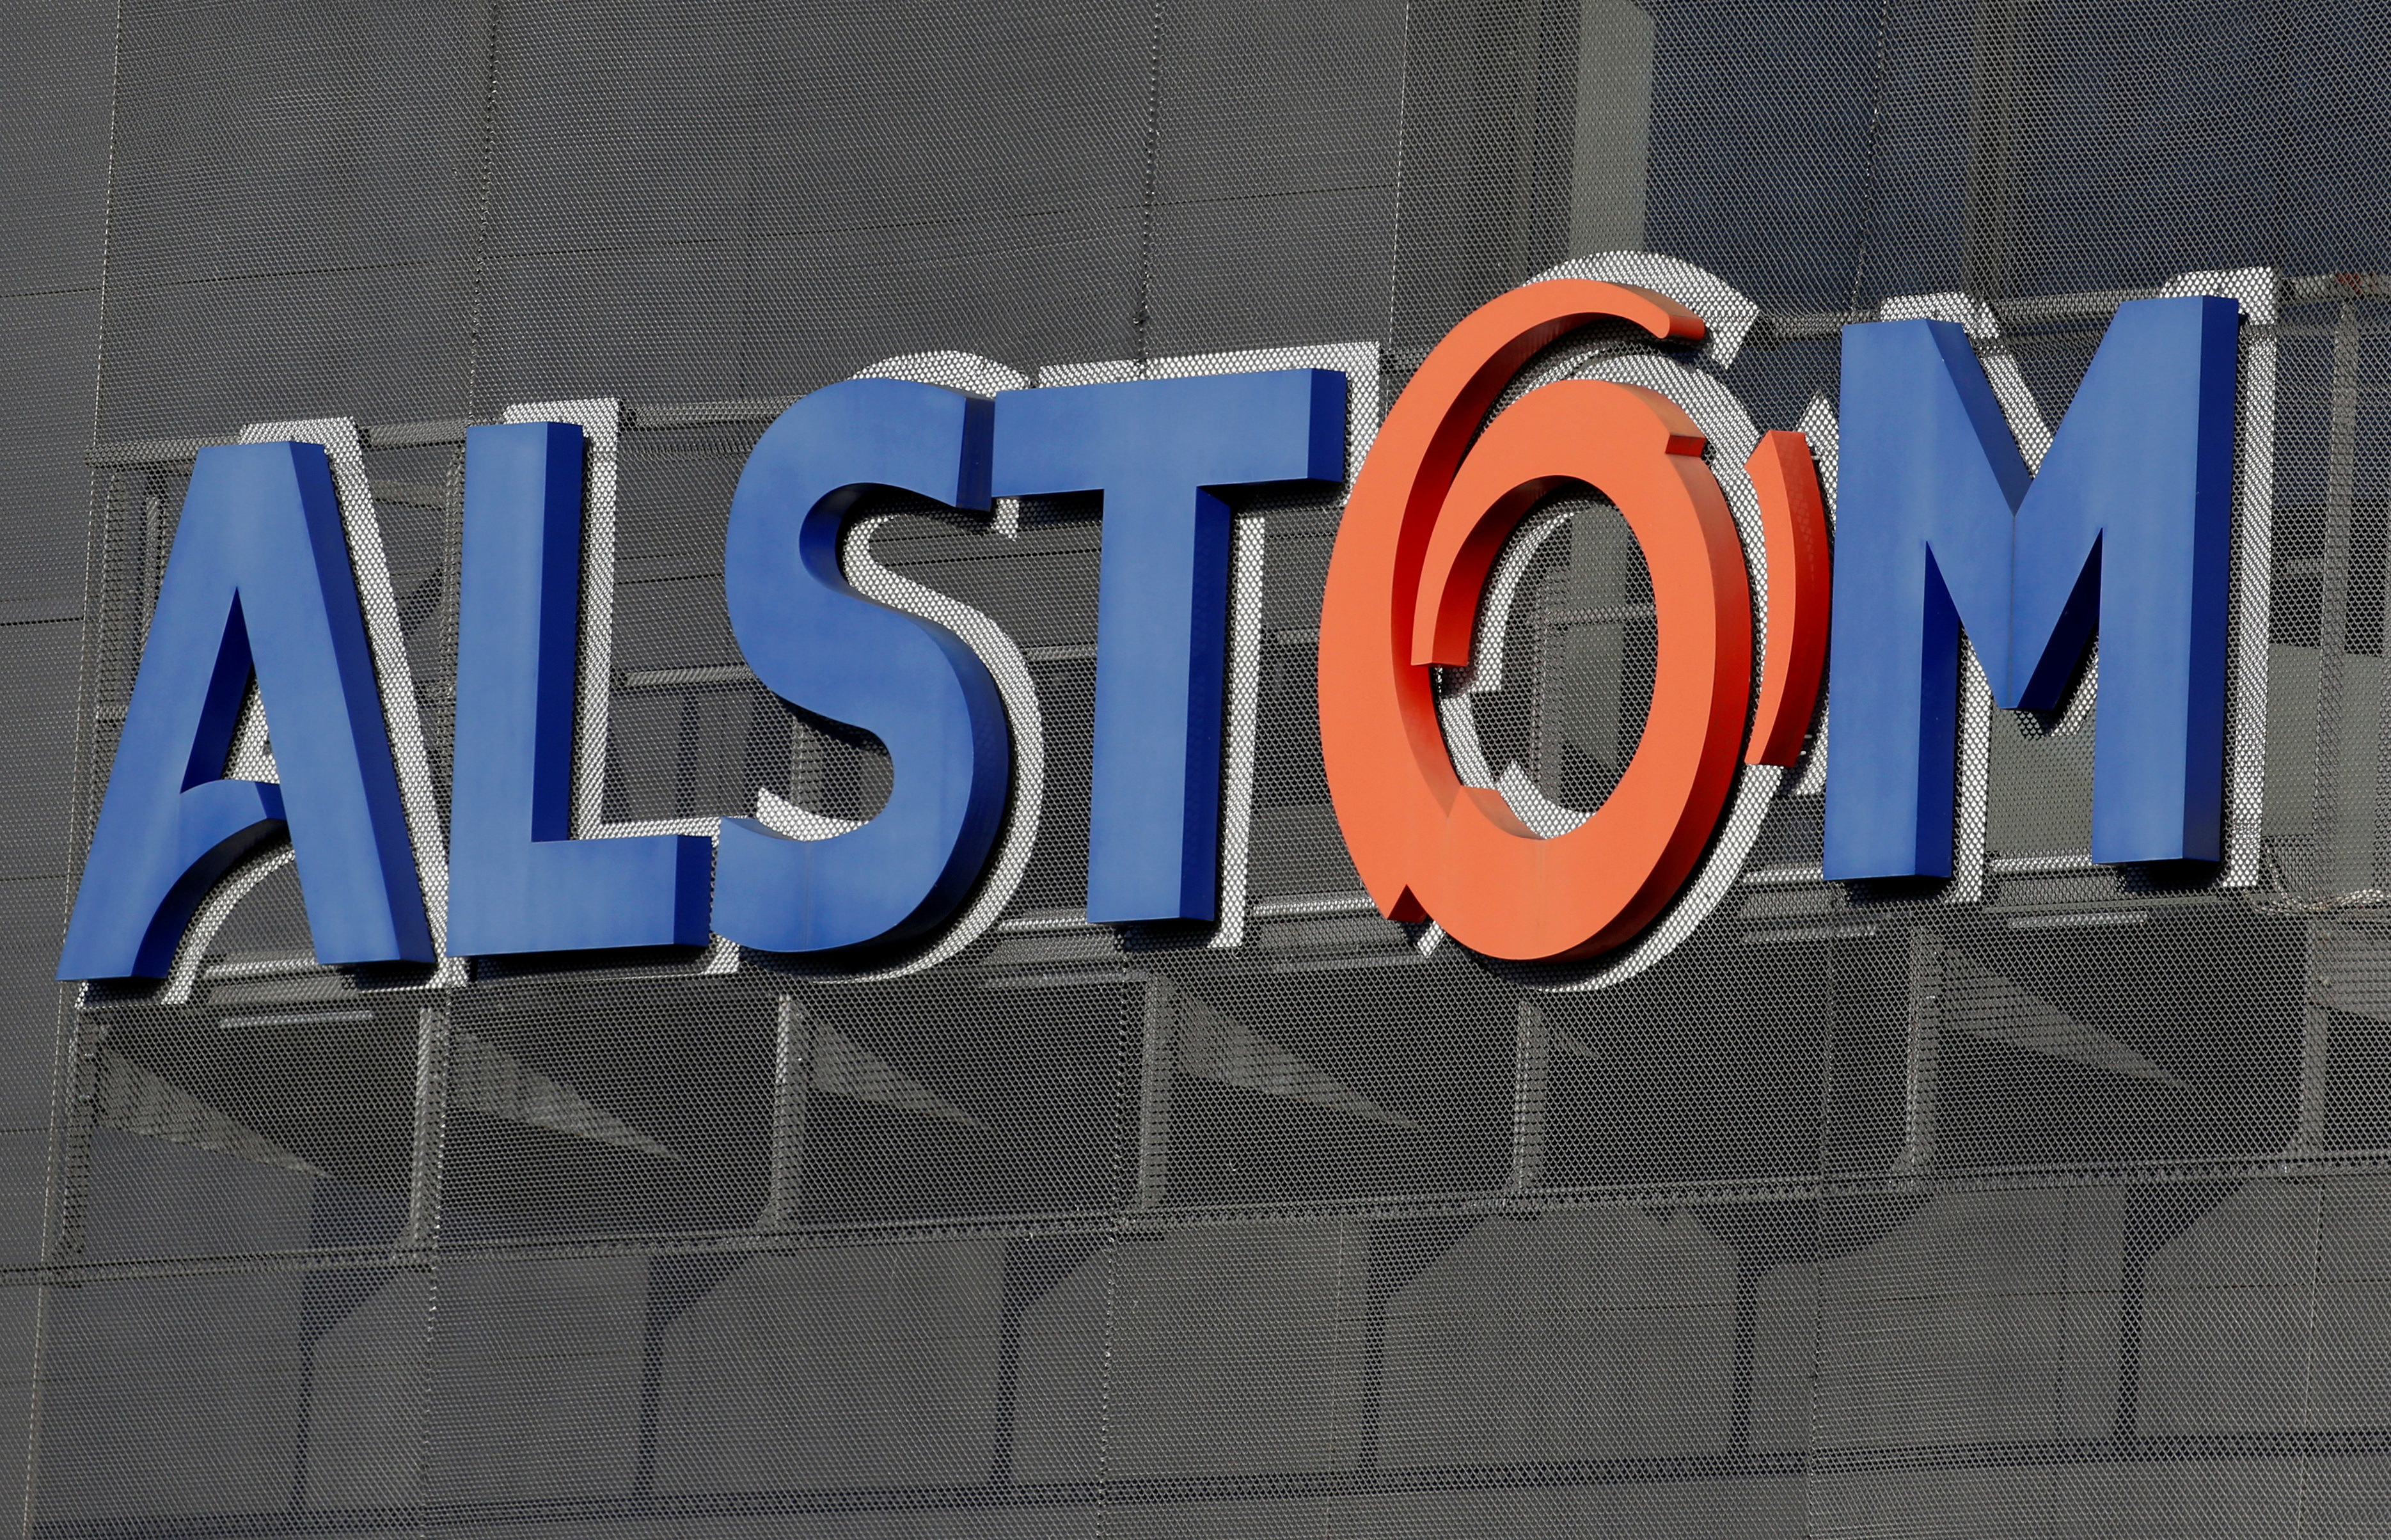 Dans un premier trimestre atypique, Alstom trouve des relais pour préserver sa croissance